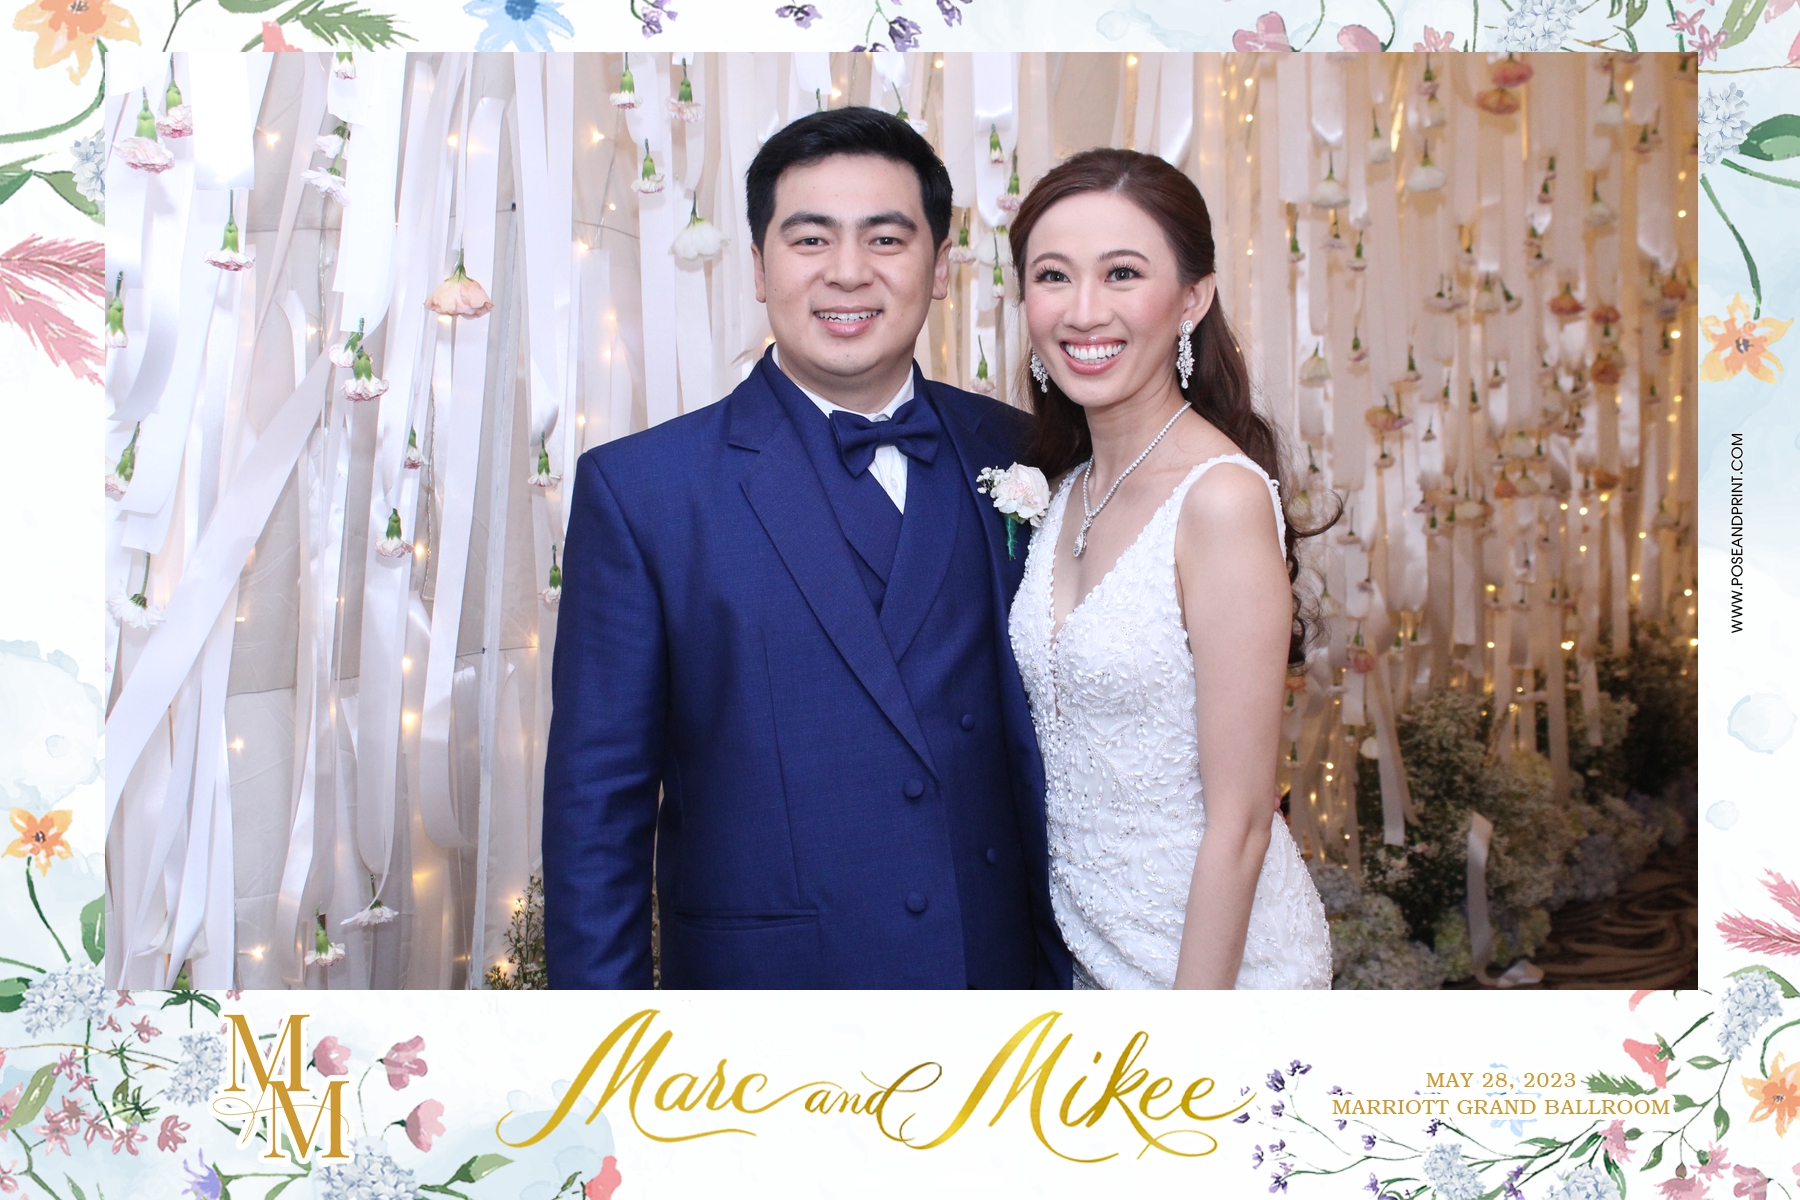 Marc and Mikee’s Wedding – Photoman 2